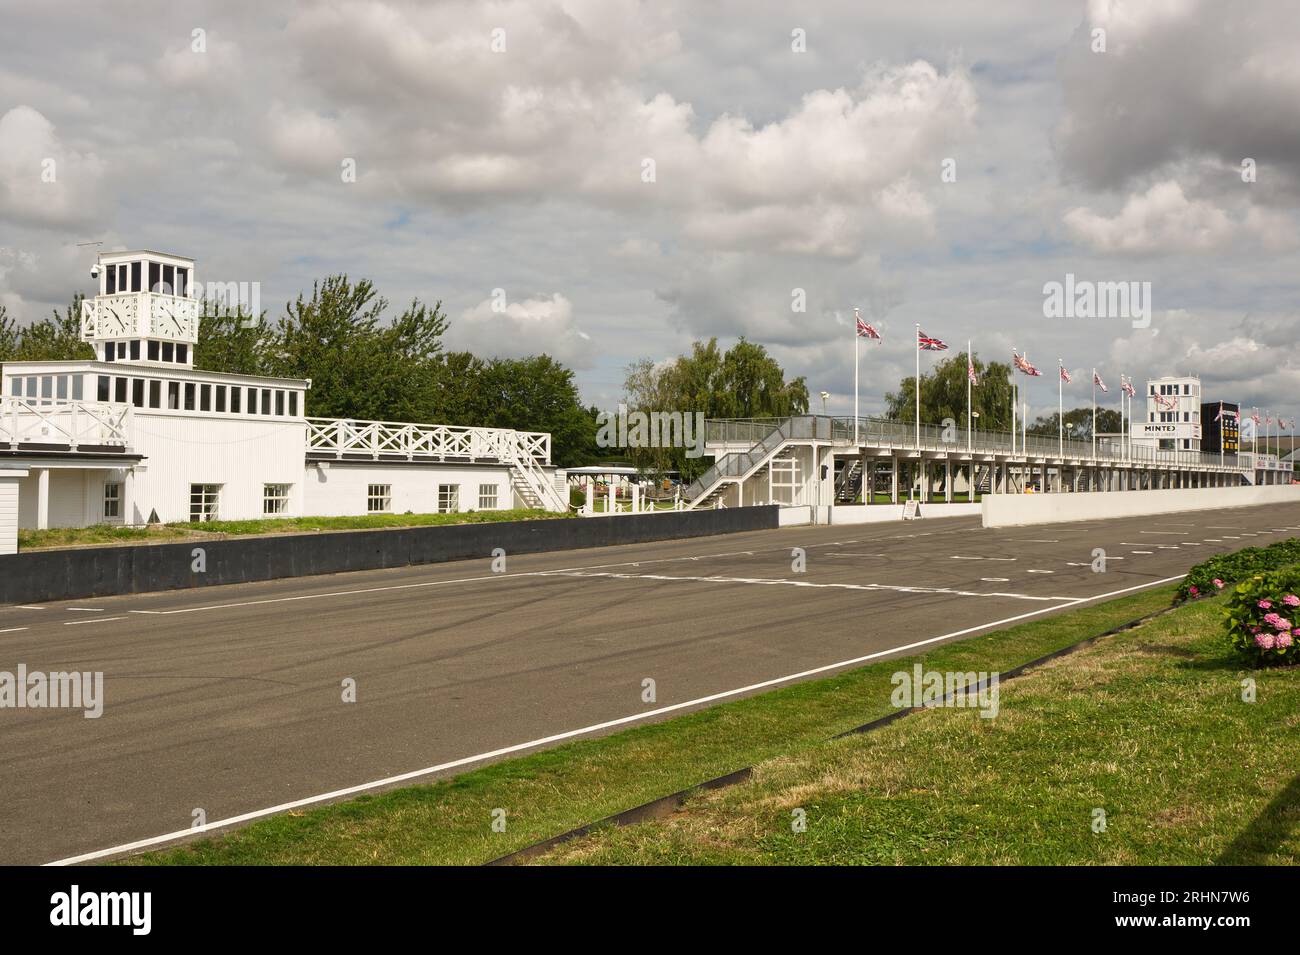 Départ / arrivée tout droit avec les bâtiments des stands au Goodwood Motor Racing circuit dans le West Sussex, en Angleterre. Banque D'Images